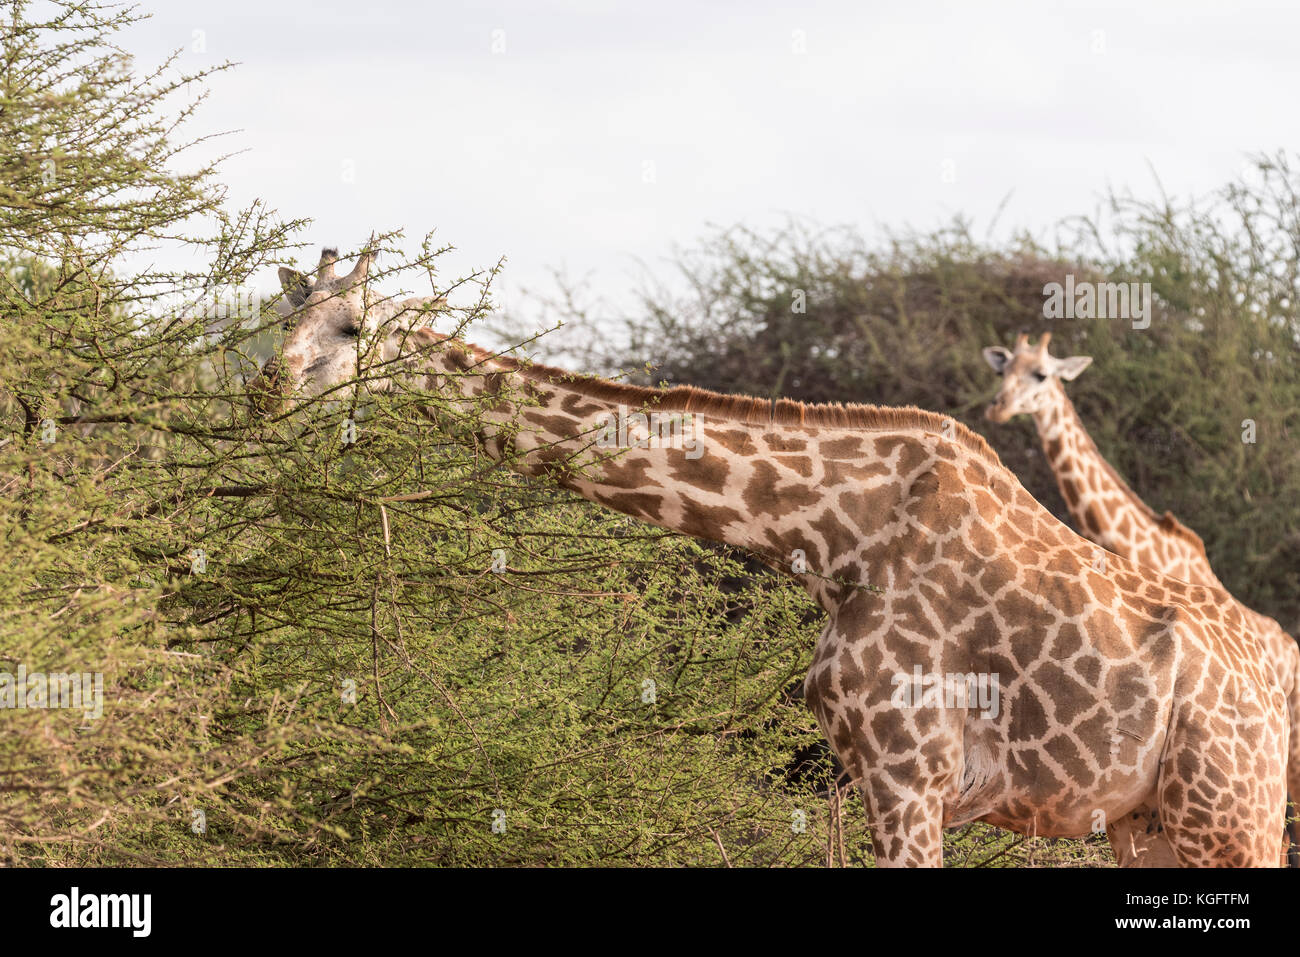 A feeding Giraffe (Giraffa camelopardalis) Stock Photo